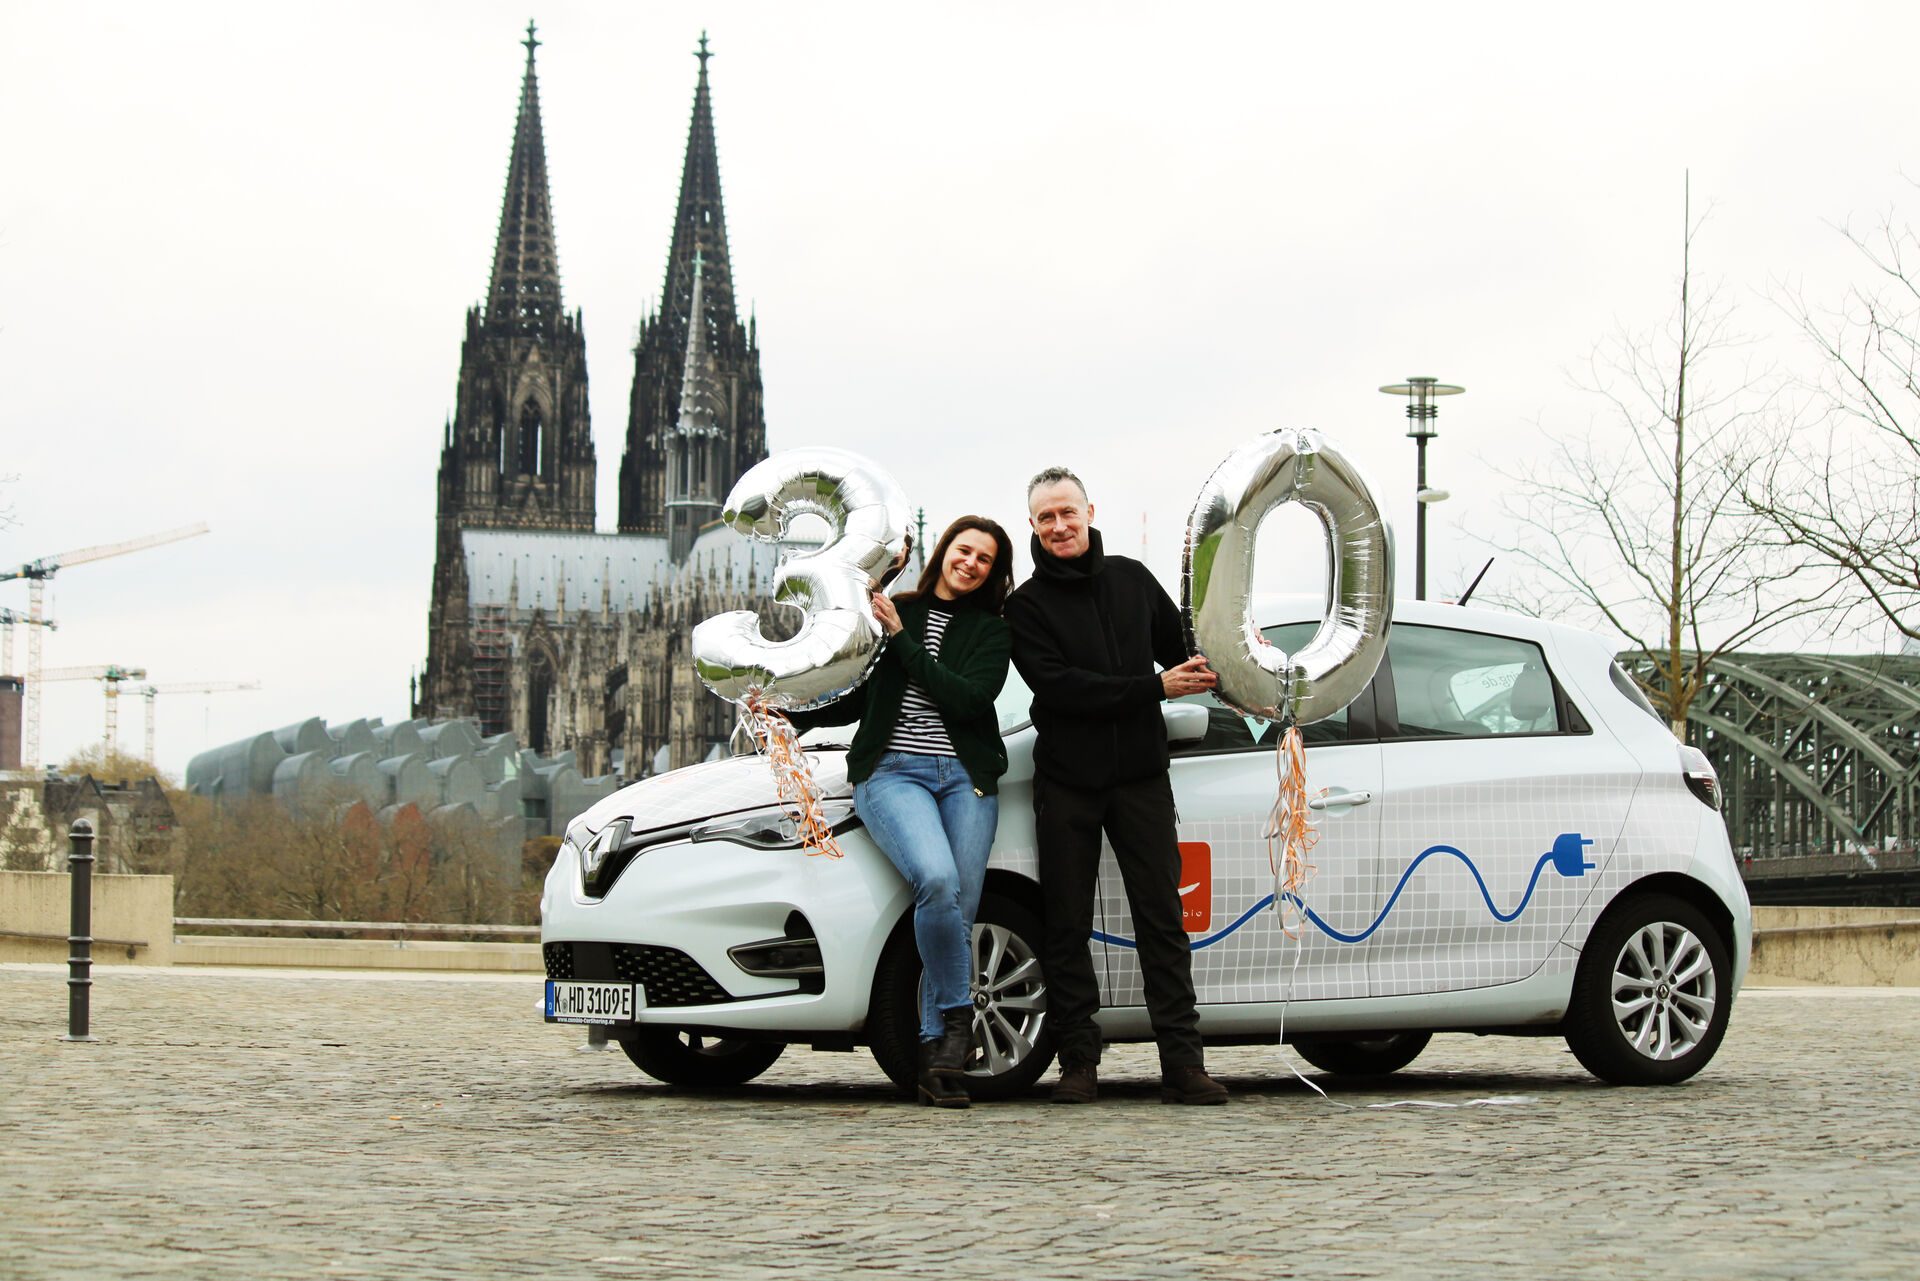 Mann und Frau stehen vor einem weißen Auto und halten eine Ballon 30 in die Kamera. Im Hintergrund sieht man den Kölner Dom.